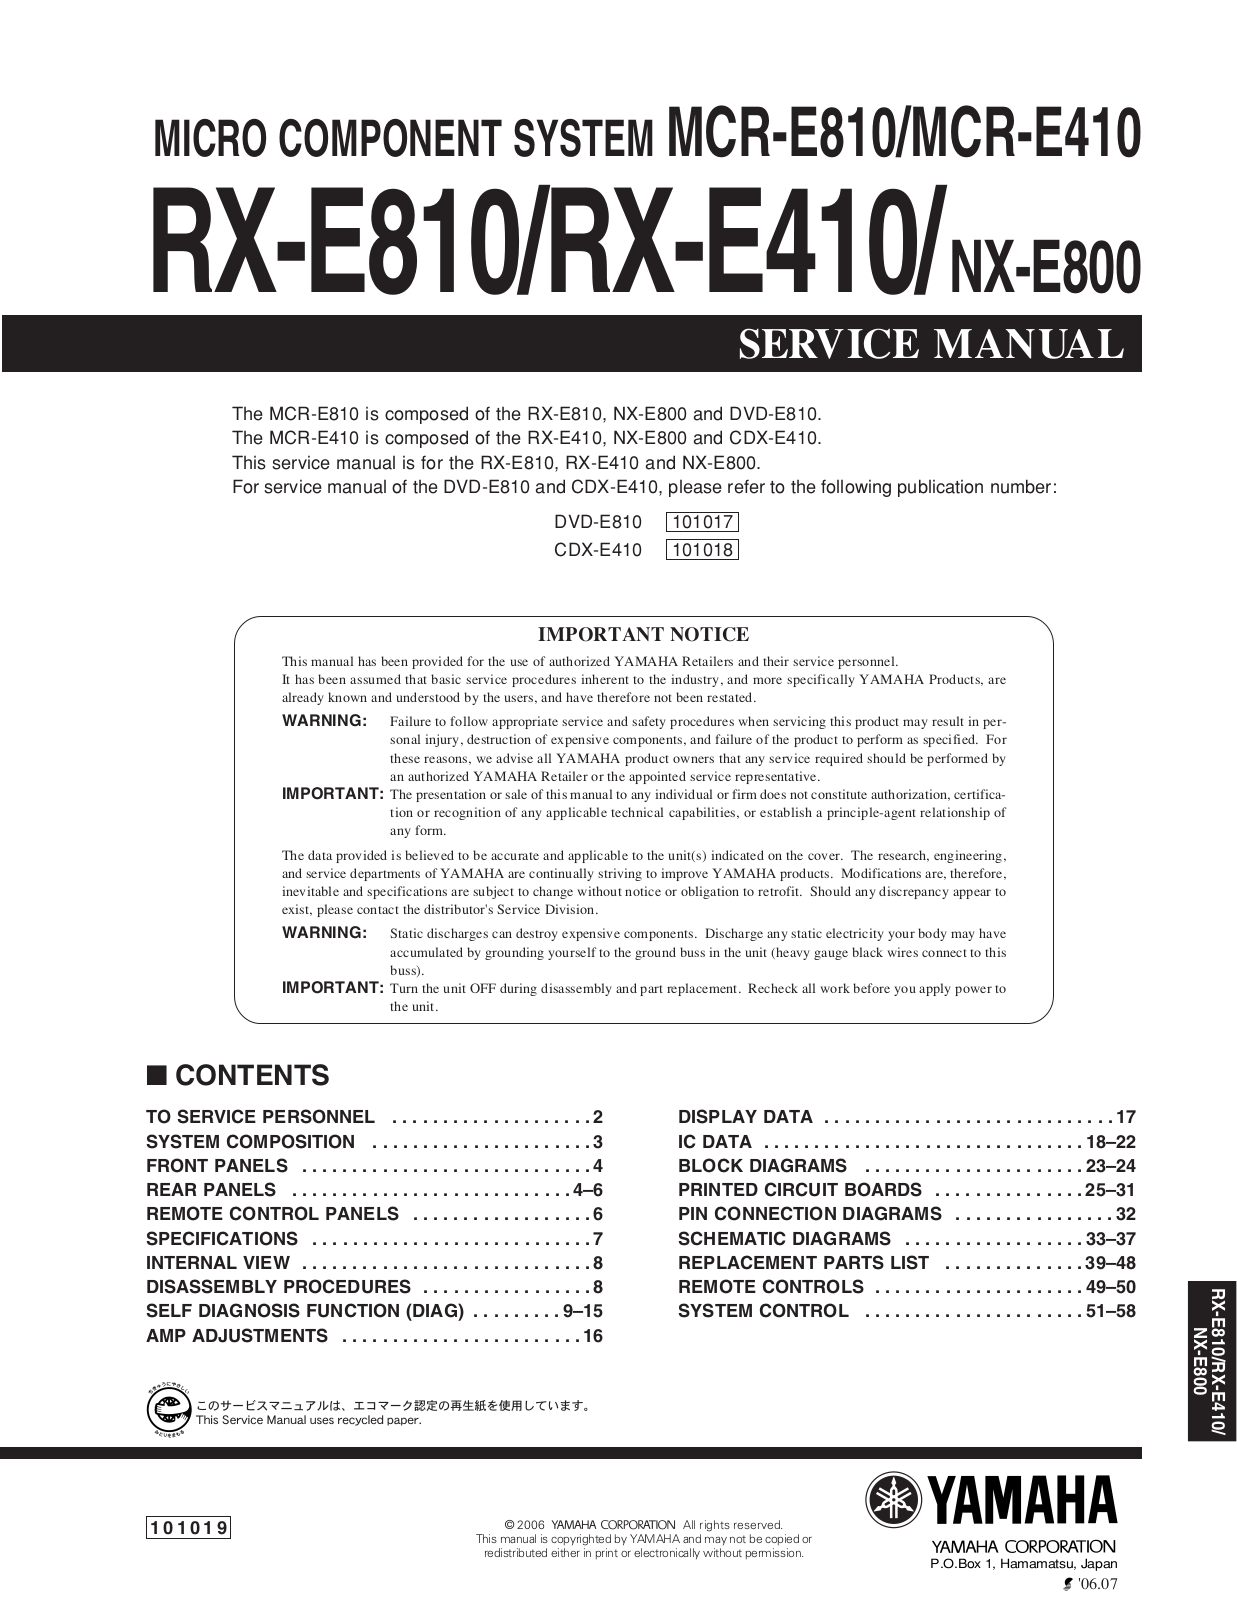 Yamaha RXE-810 Service manual